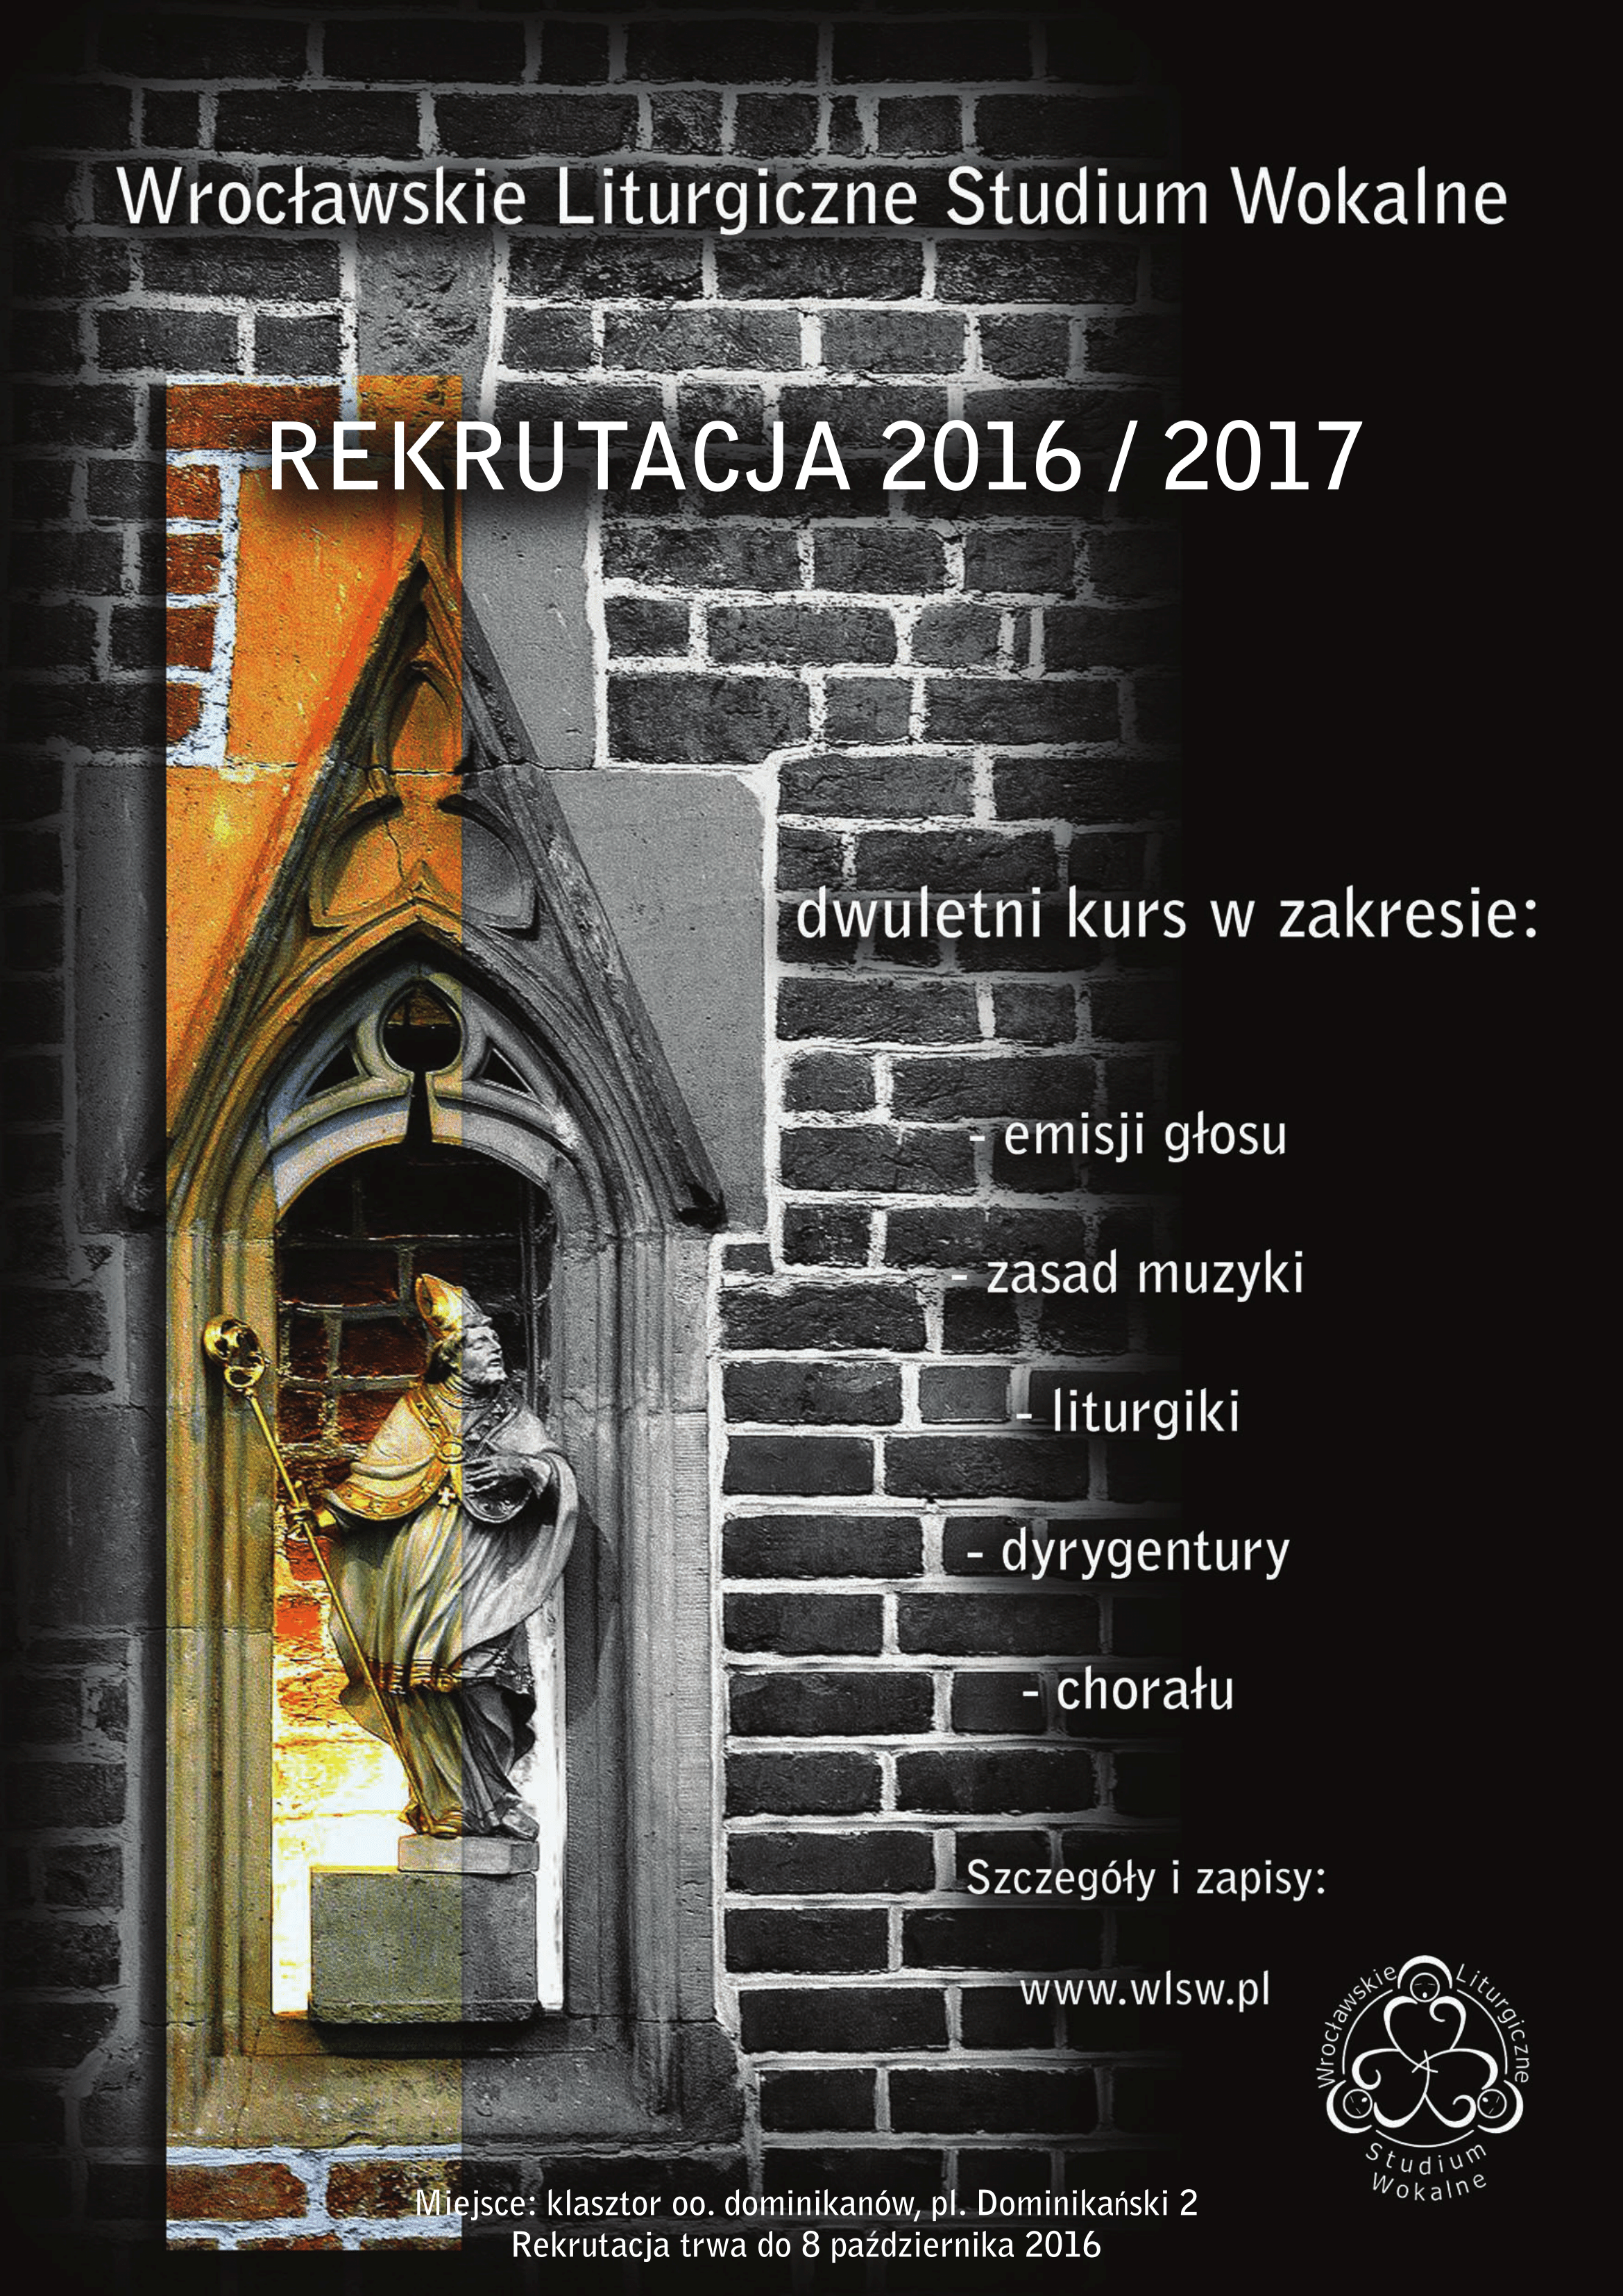 Wrocławskie Liturgiczne Studium Wokalne - Rekrutacja 2016-2017, plakat